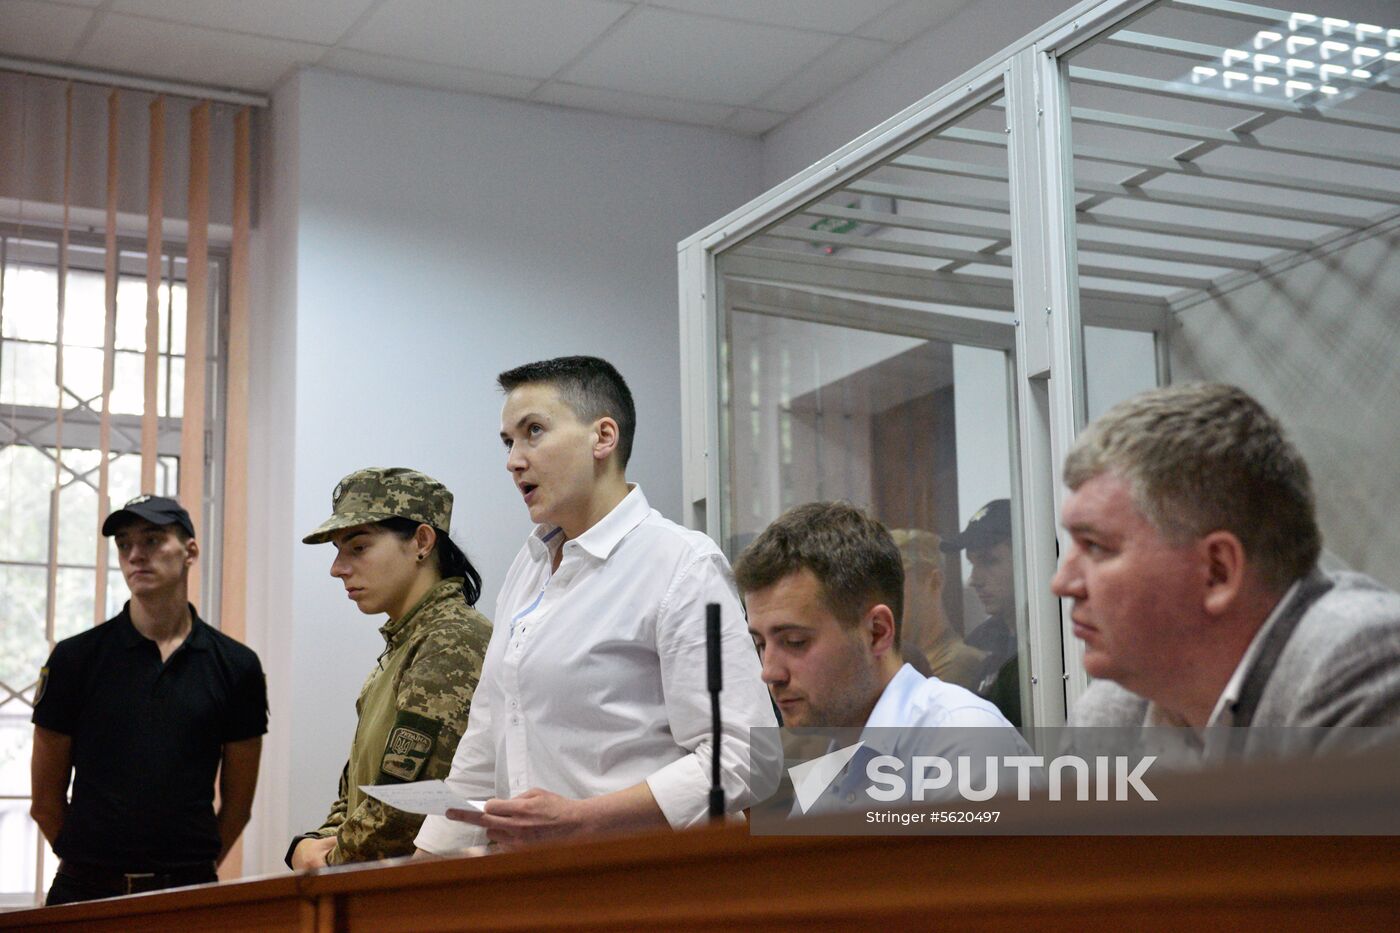 Kiev court hears appeal against Nadezhda Savchenko's arrest